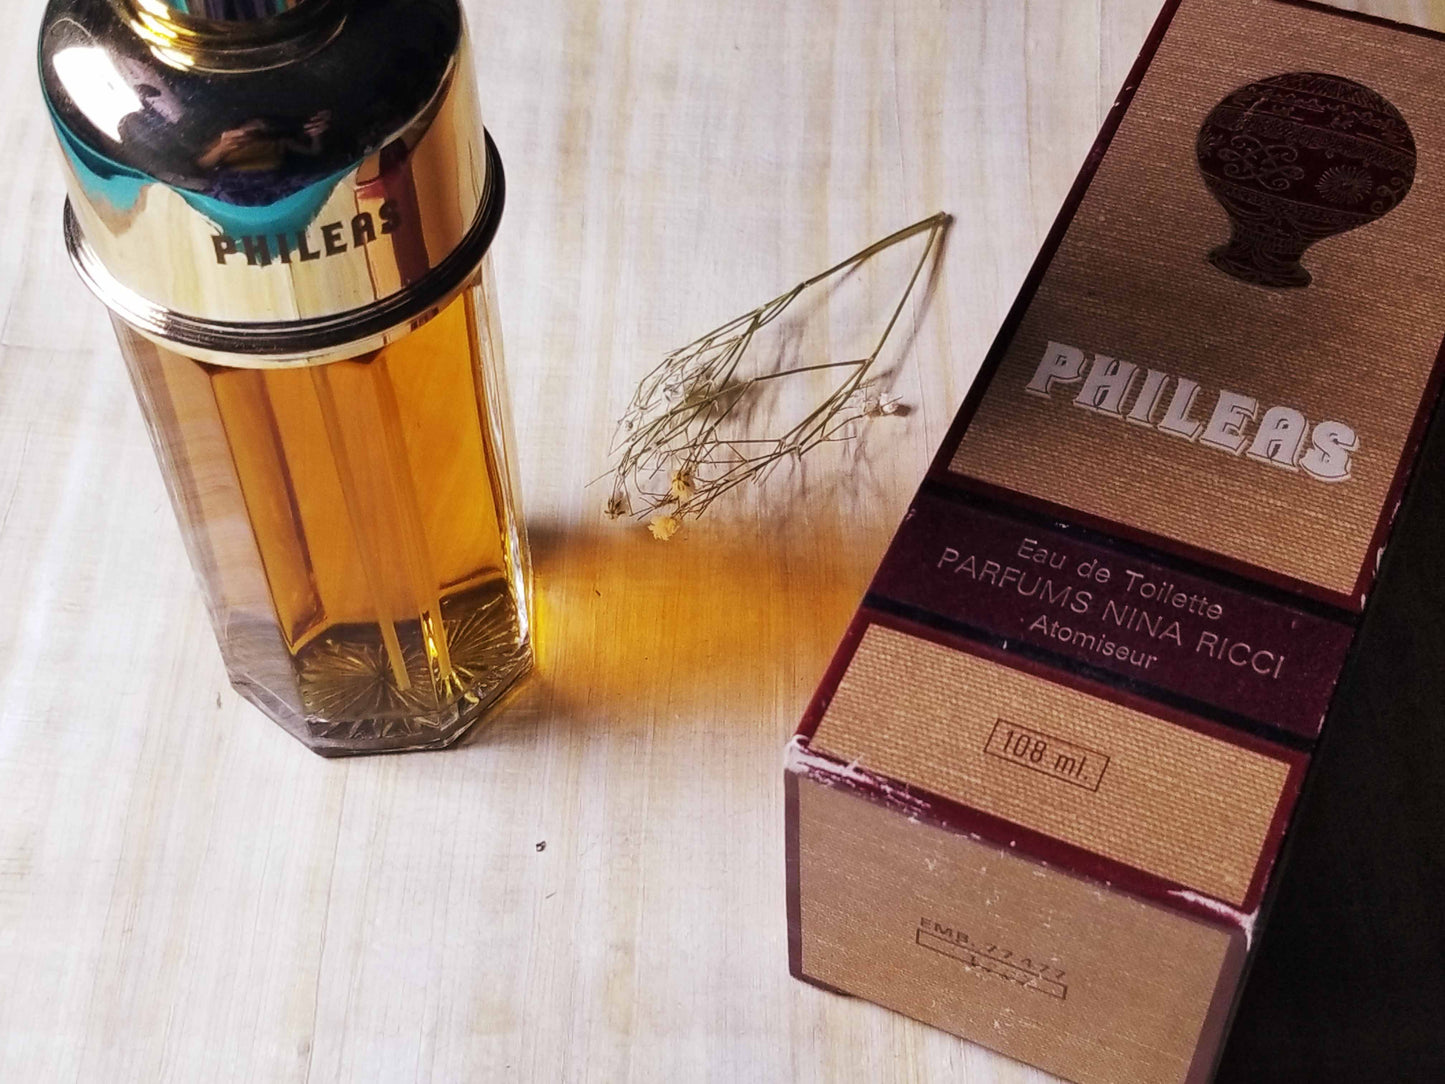 Phileas Nina Ricci for men EDT Atomizer 108 ml - 3.6 oz, Rare, Vintage